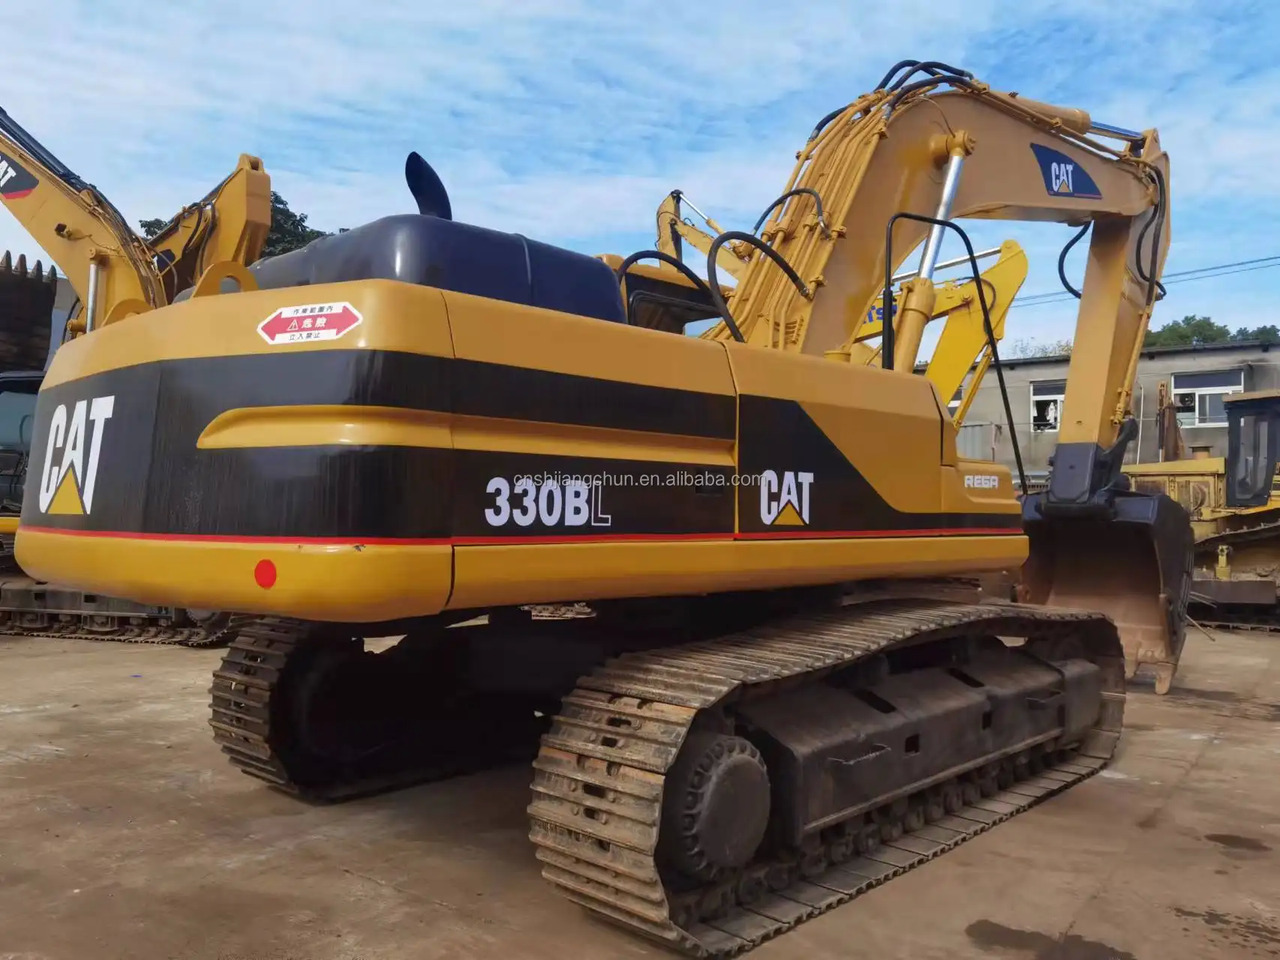 מחפר סורק Used Caterpillar crawler excavator CAT 330BL in good condition for sale: תמונה 2